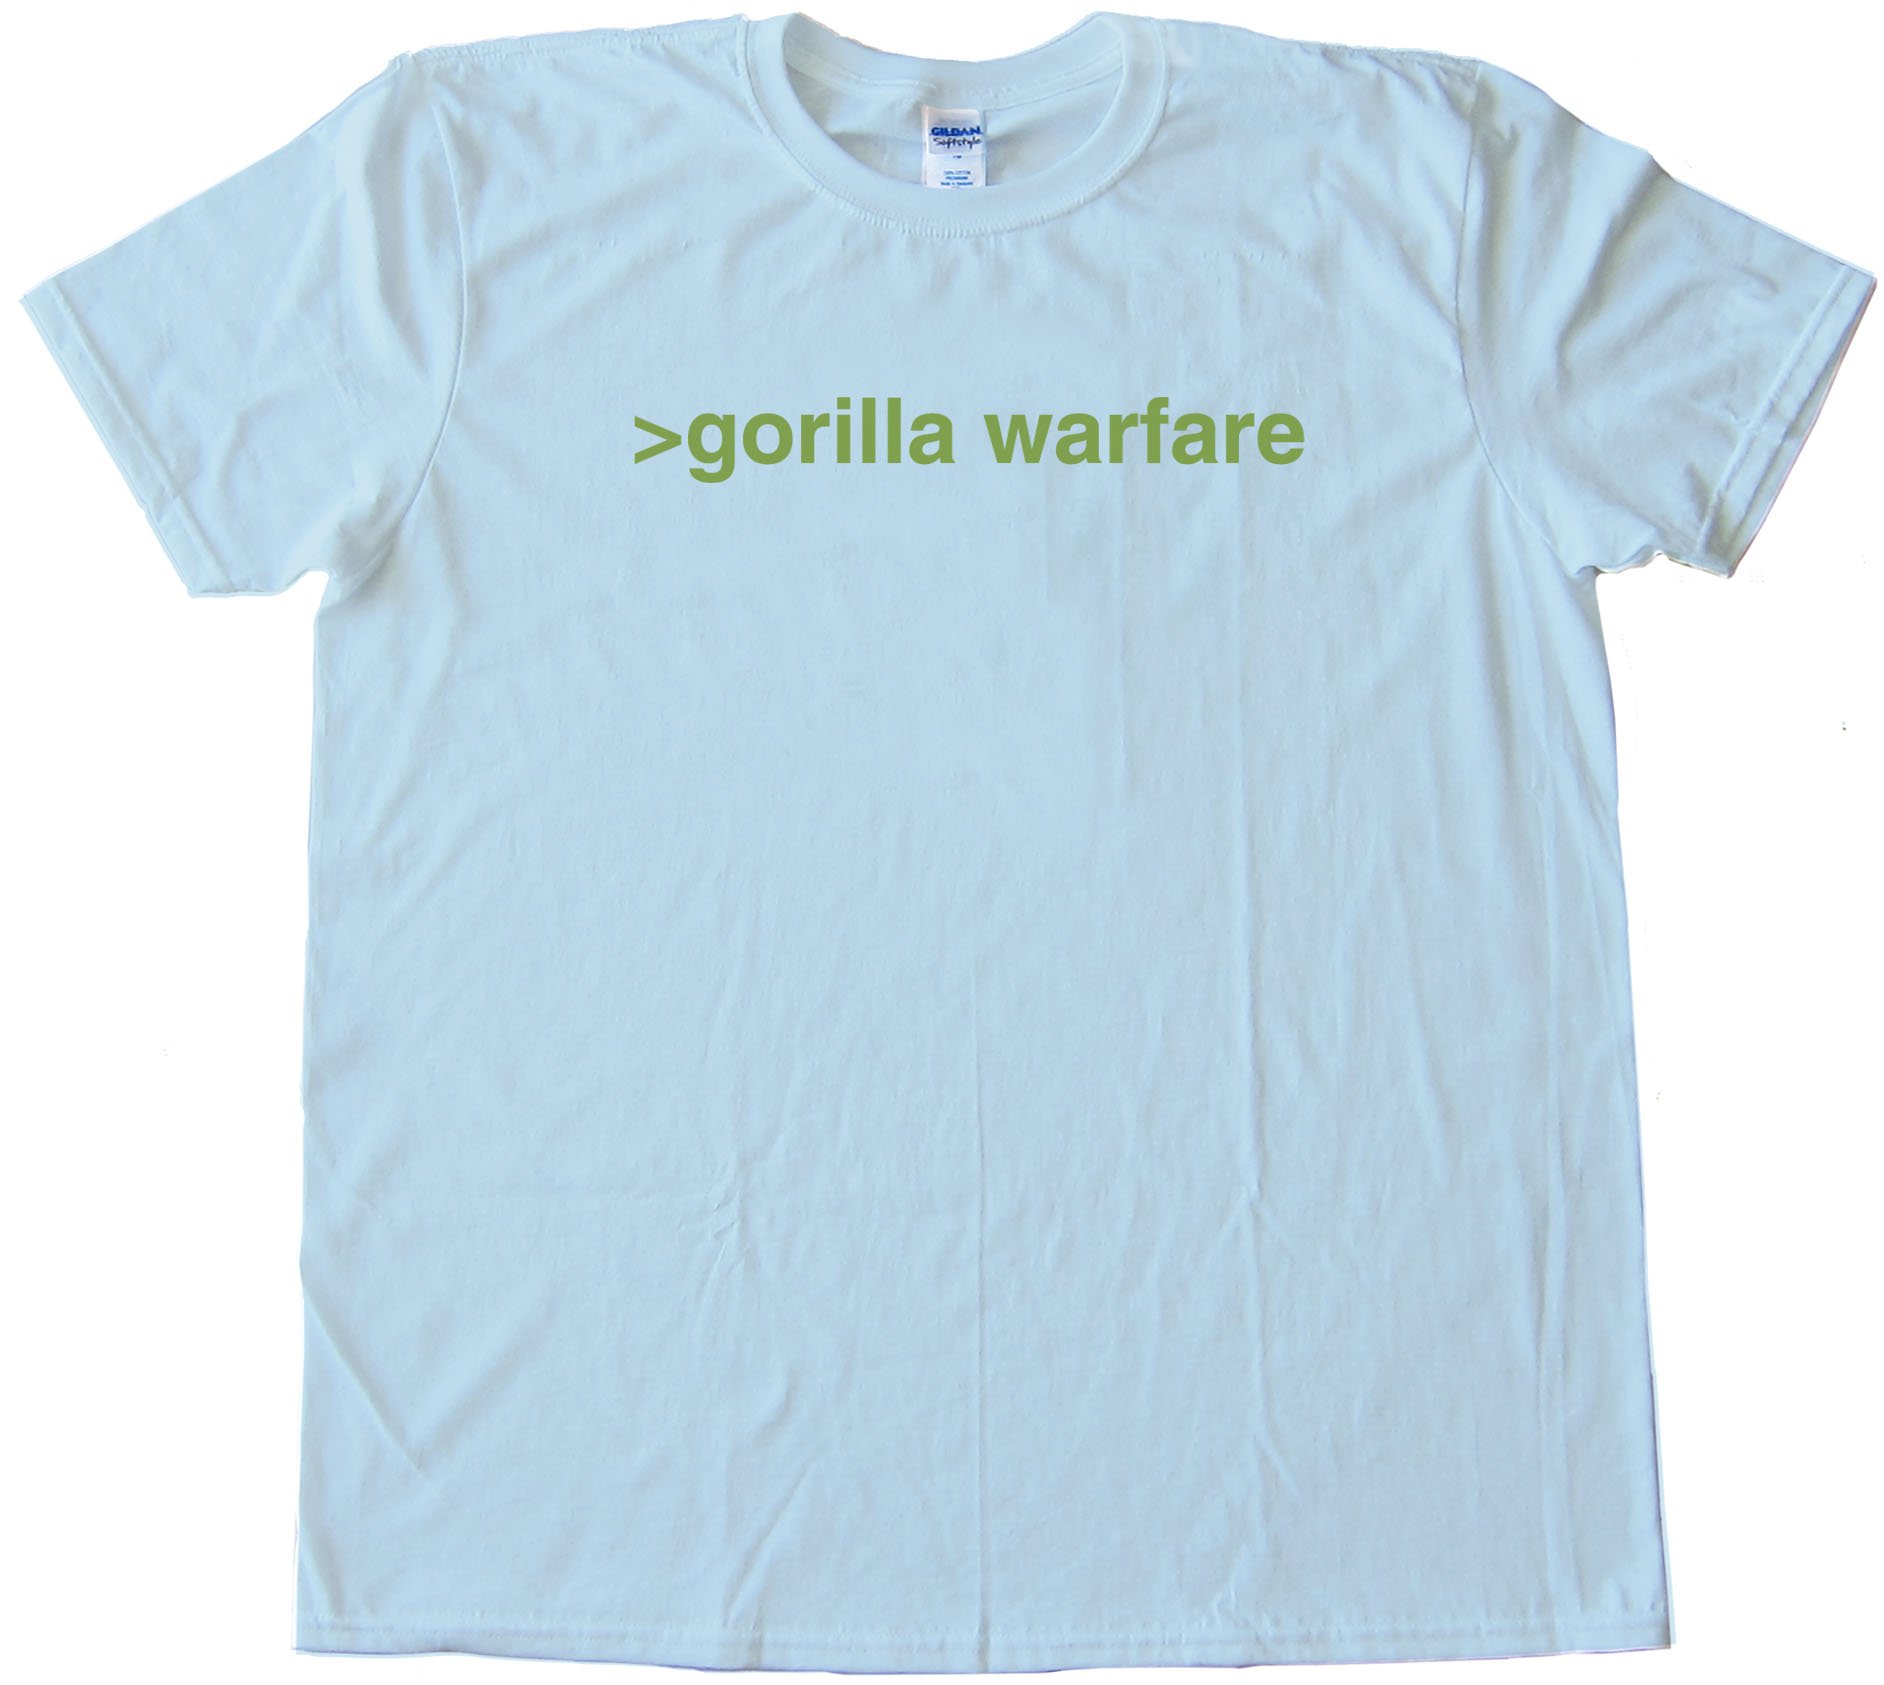 Gorilla Warfare - Tee Shirt